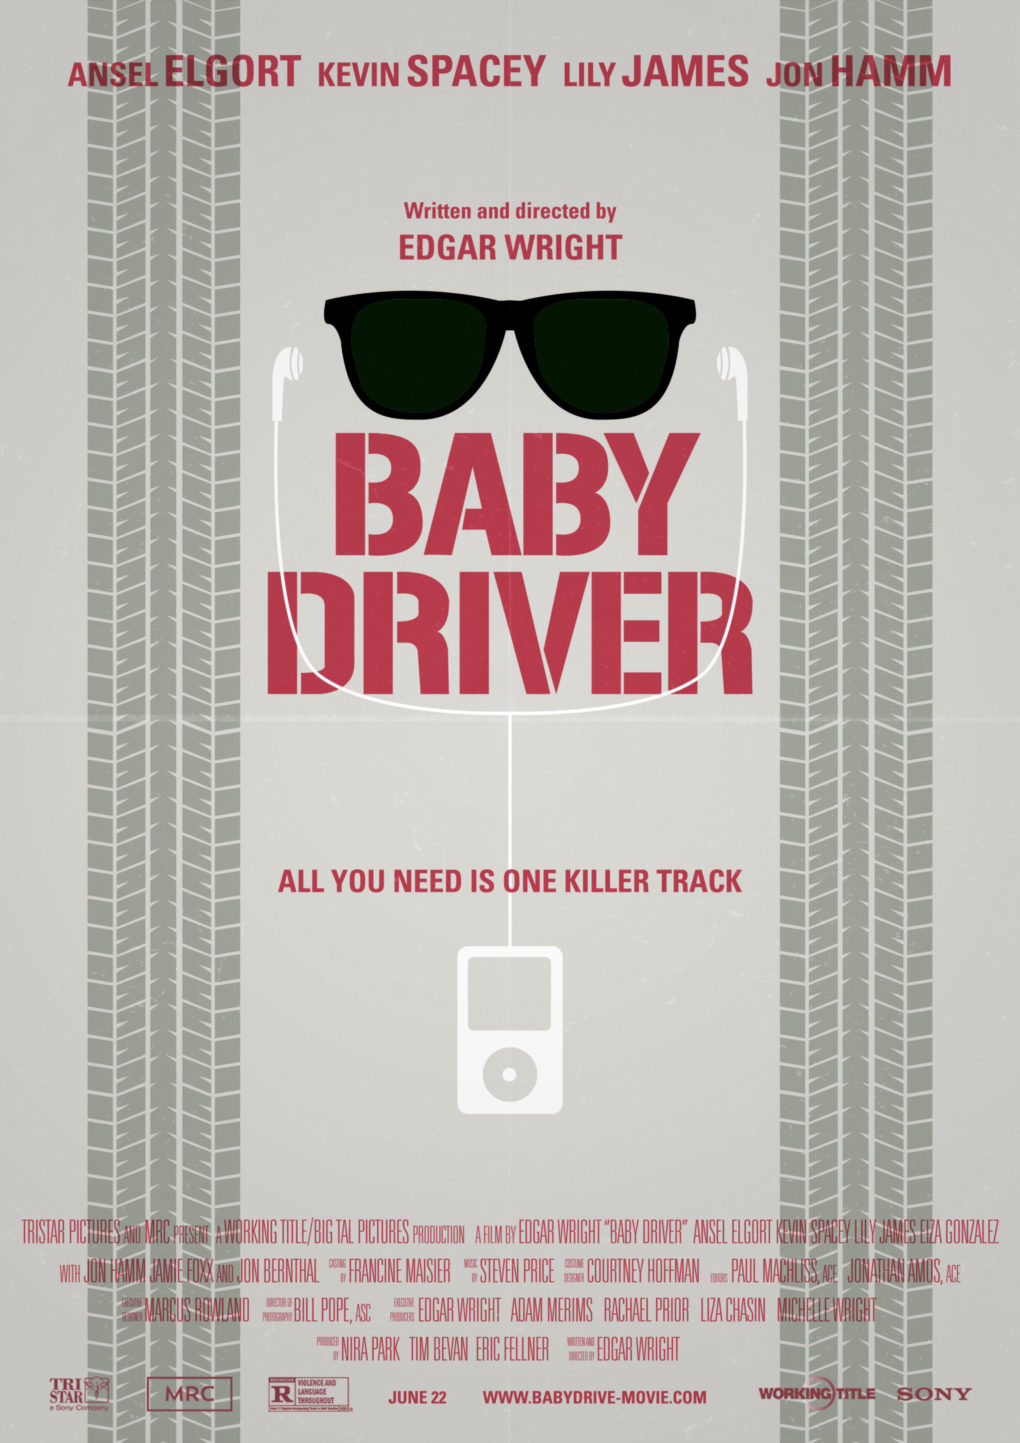 Cartel minimalista de "Baby Driver".